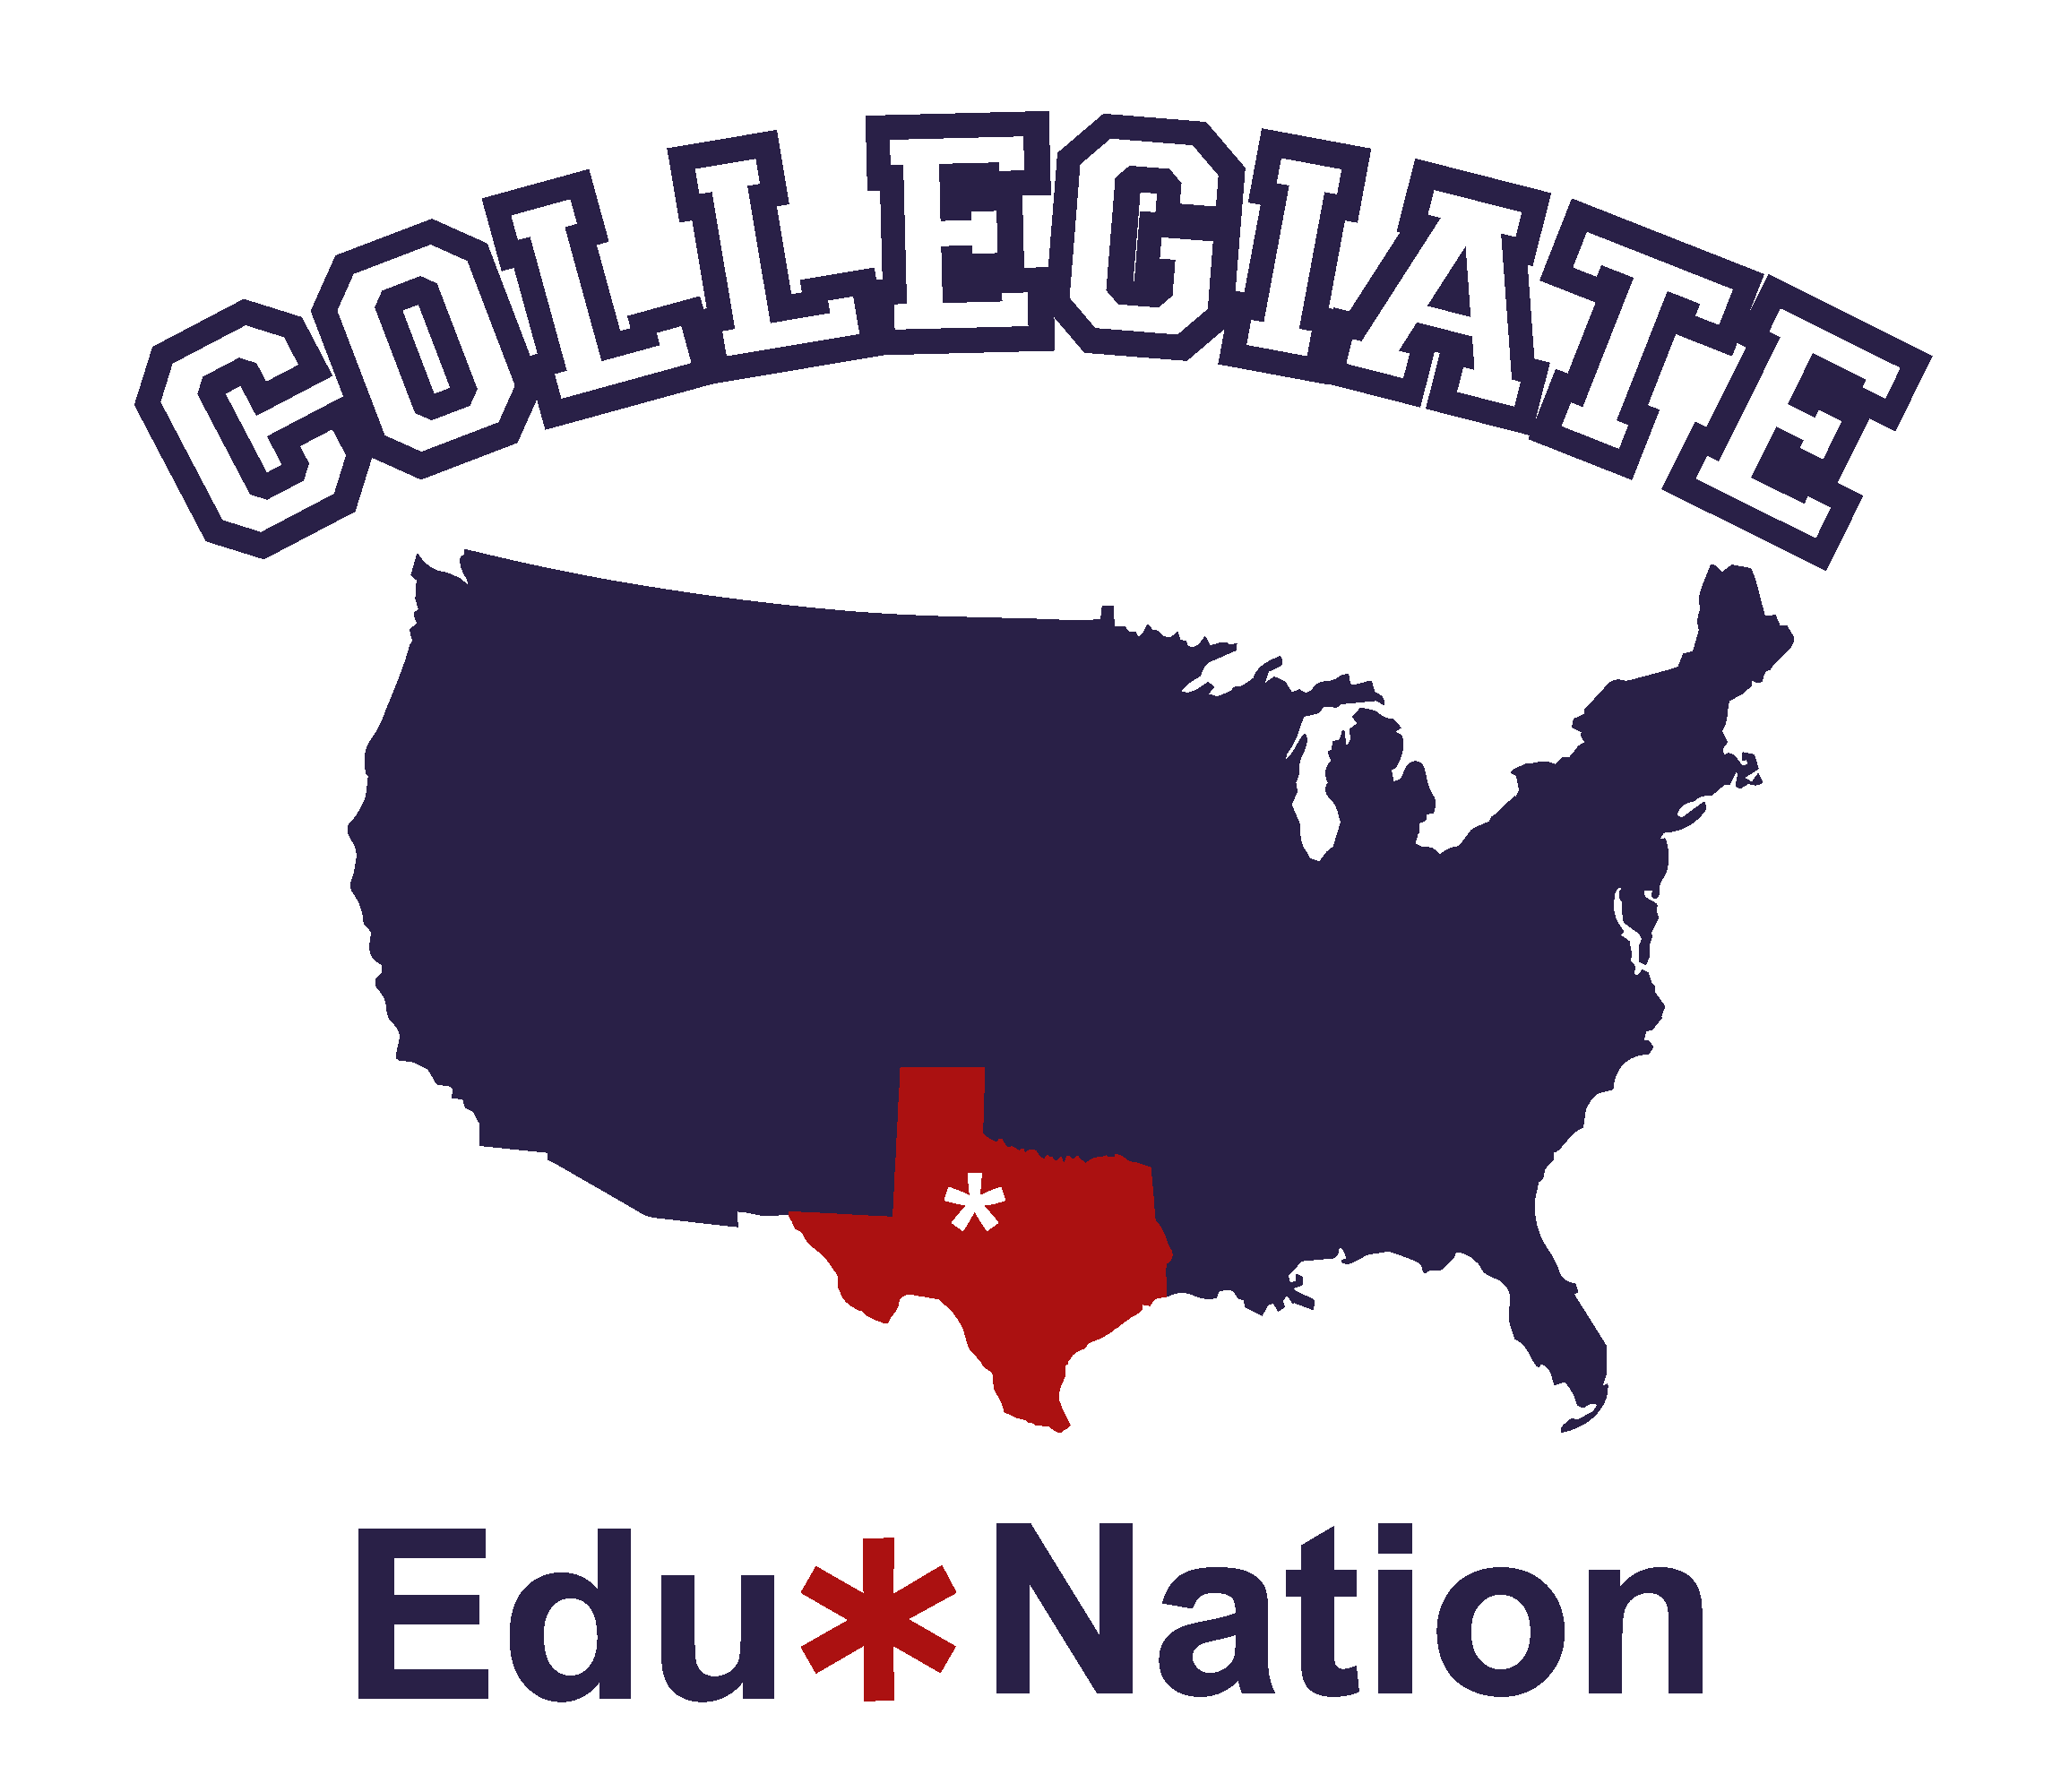 Collegiate Edu-Nation